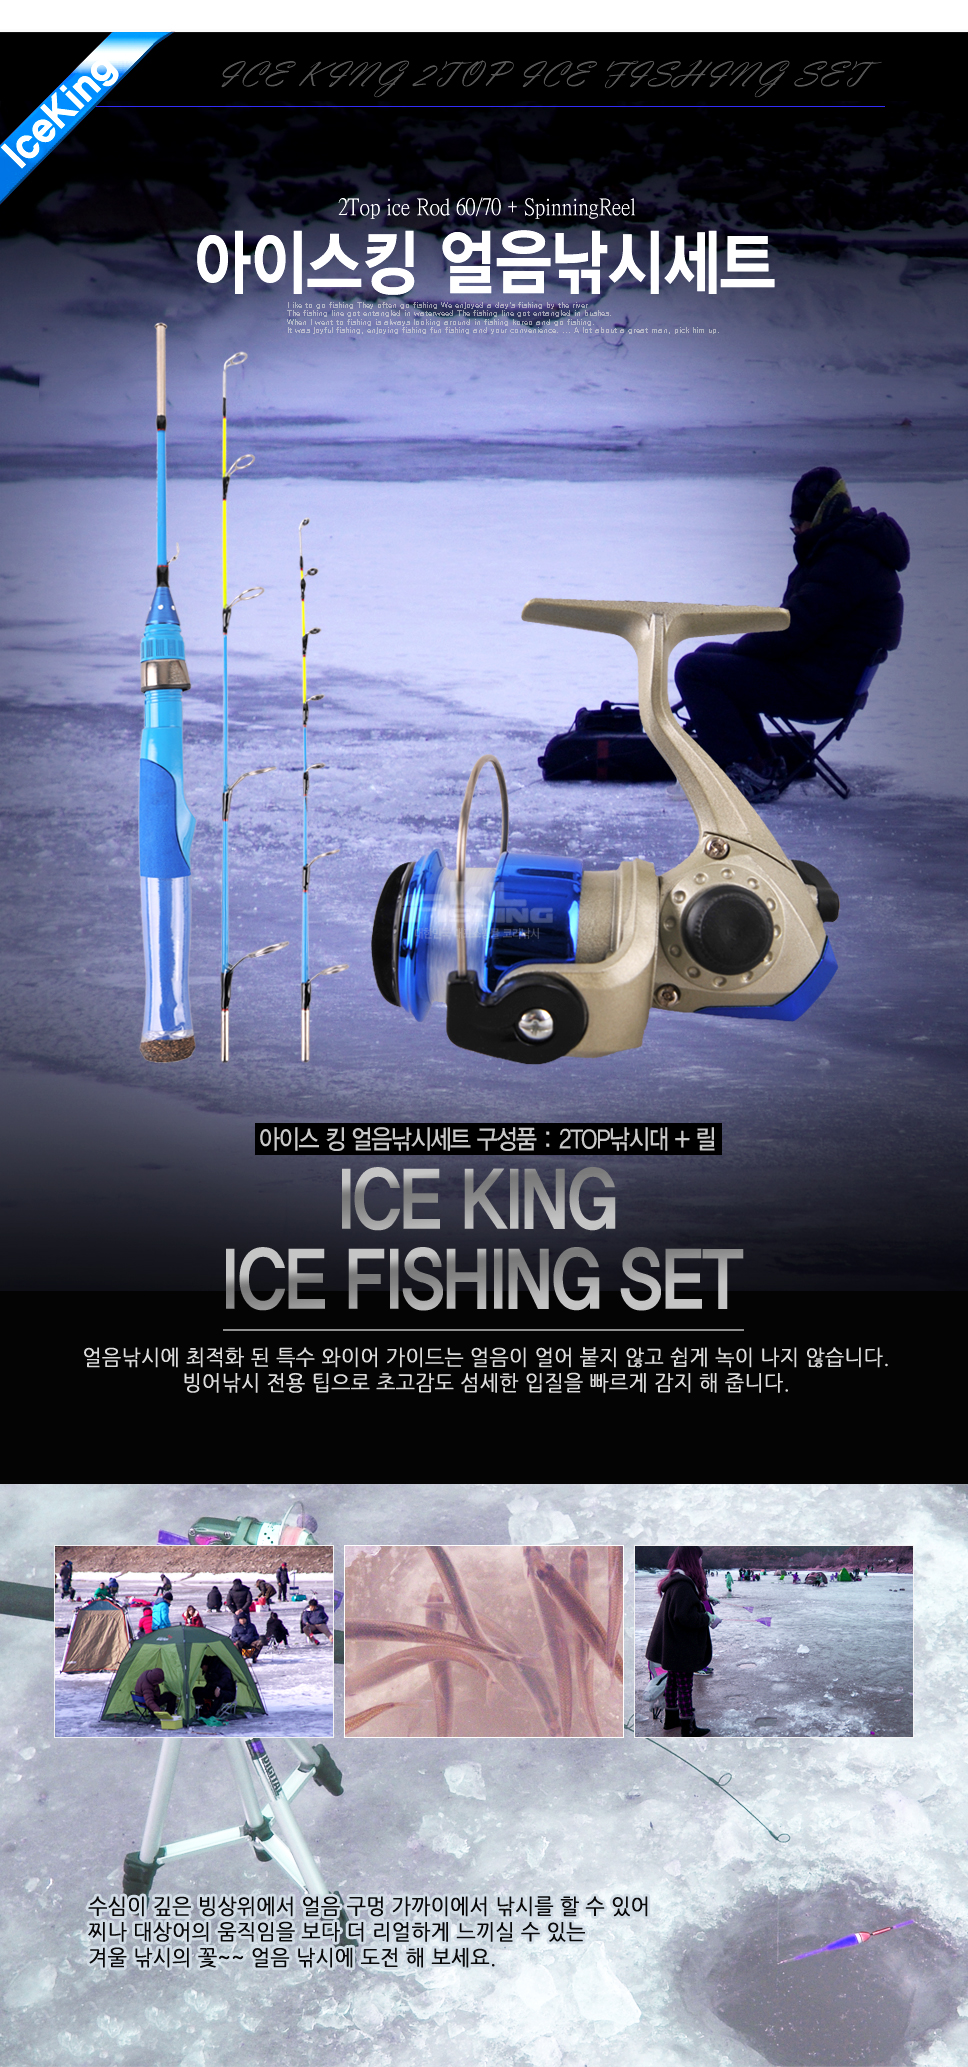 아이스킹 얼음낚시세트 (2TOP로드+릴) 송어산천어빙어 얼음축제 빙어축제송어축제 산천어축제 겨울축제 빙상낚시 얼음붕어